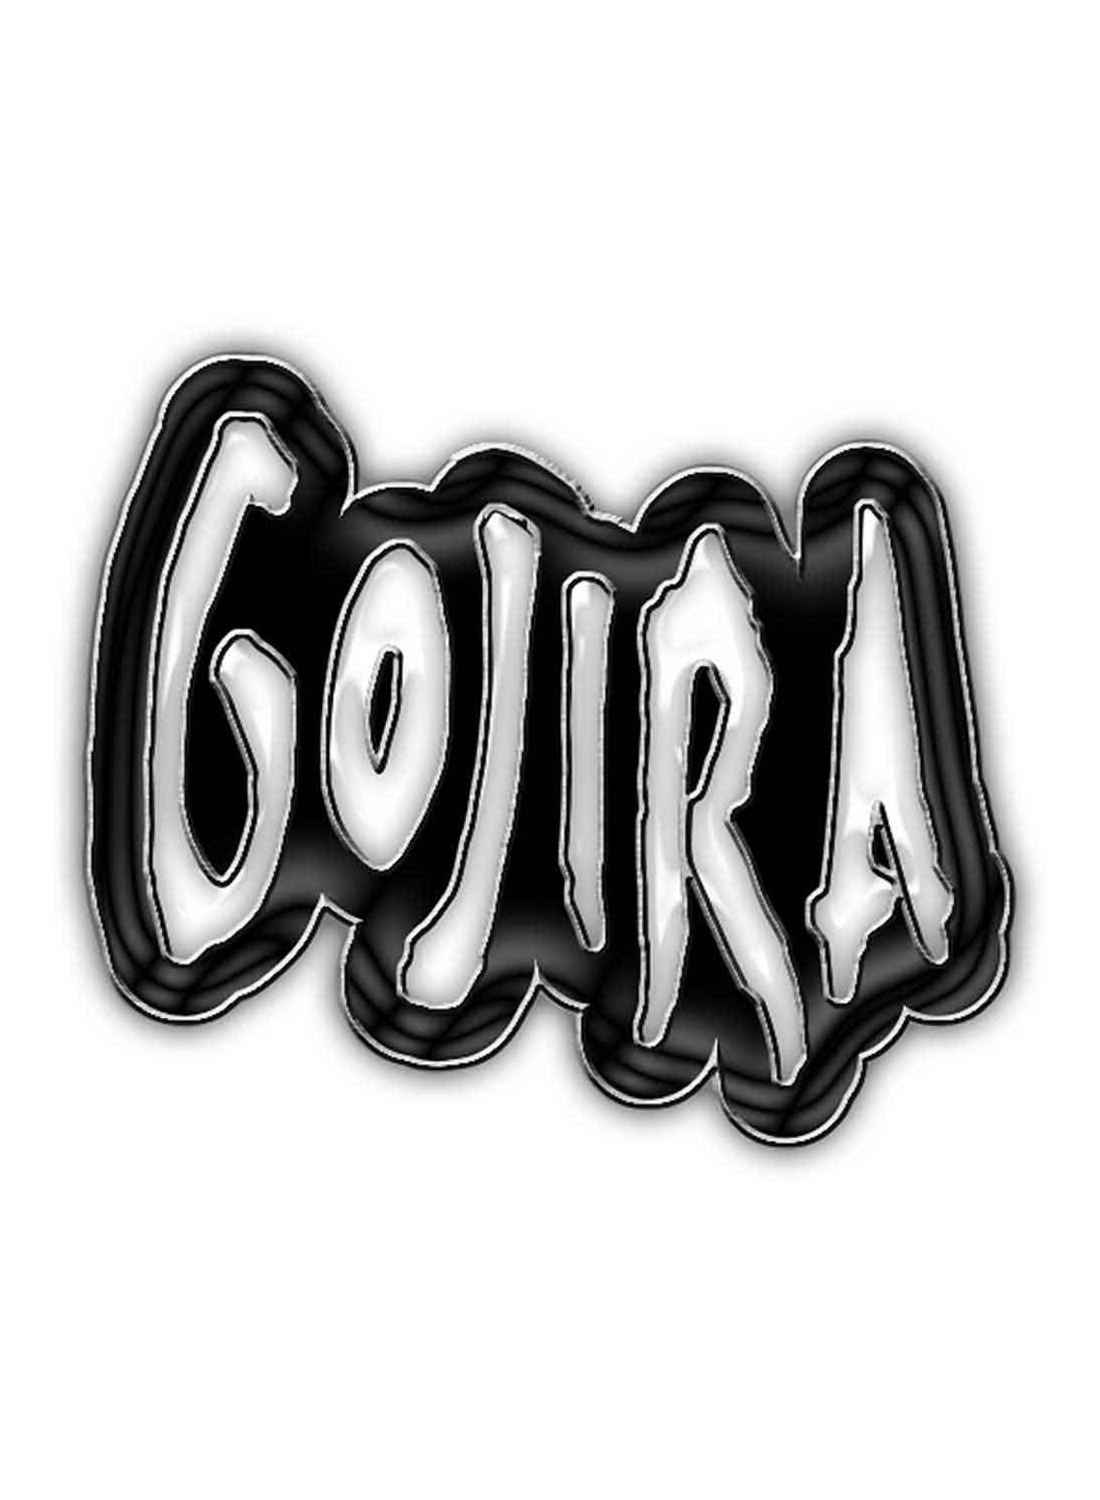 Gojira Logo Metal Pin Badge